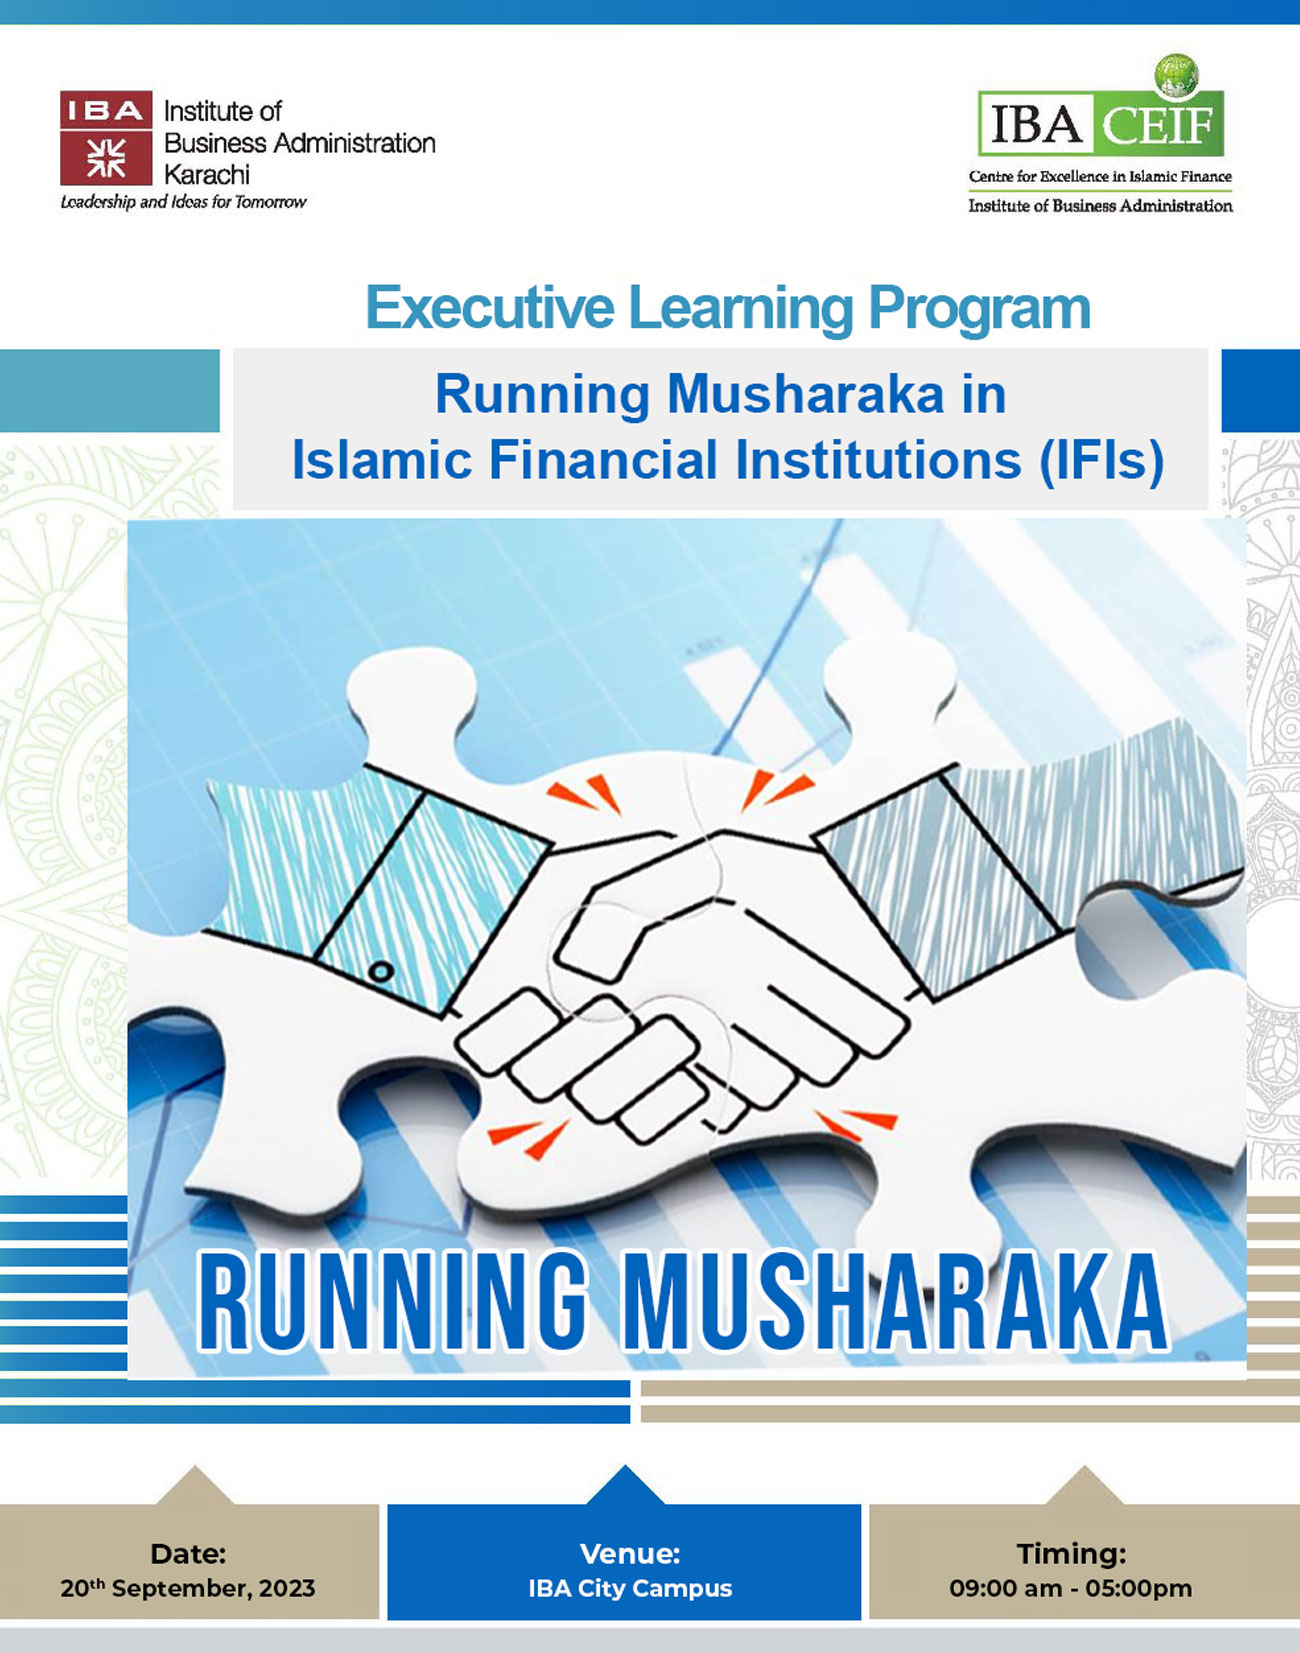 Running Musharaka in Islamic Financial Institutions (IFIs)